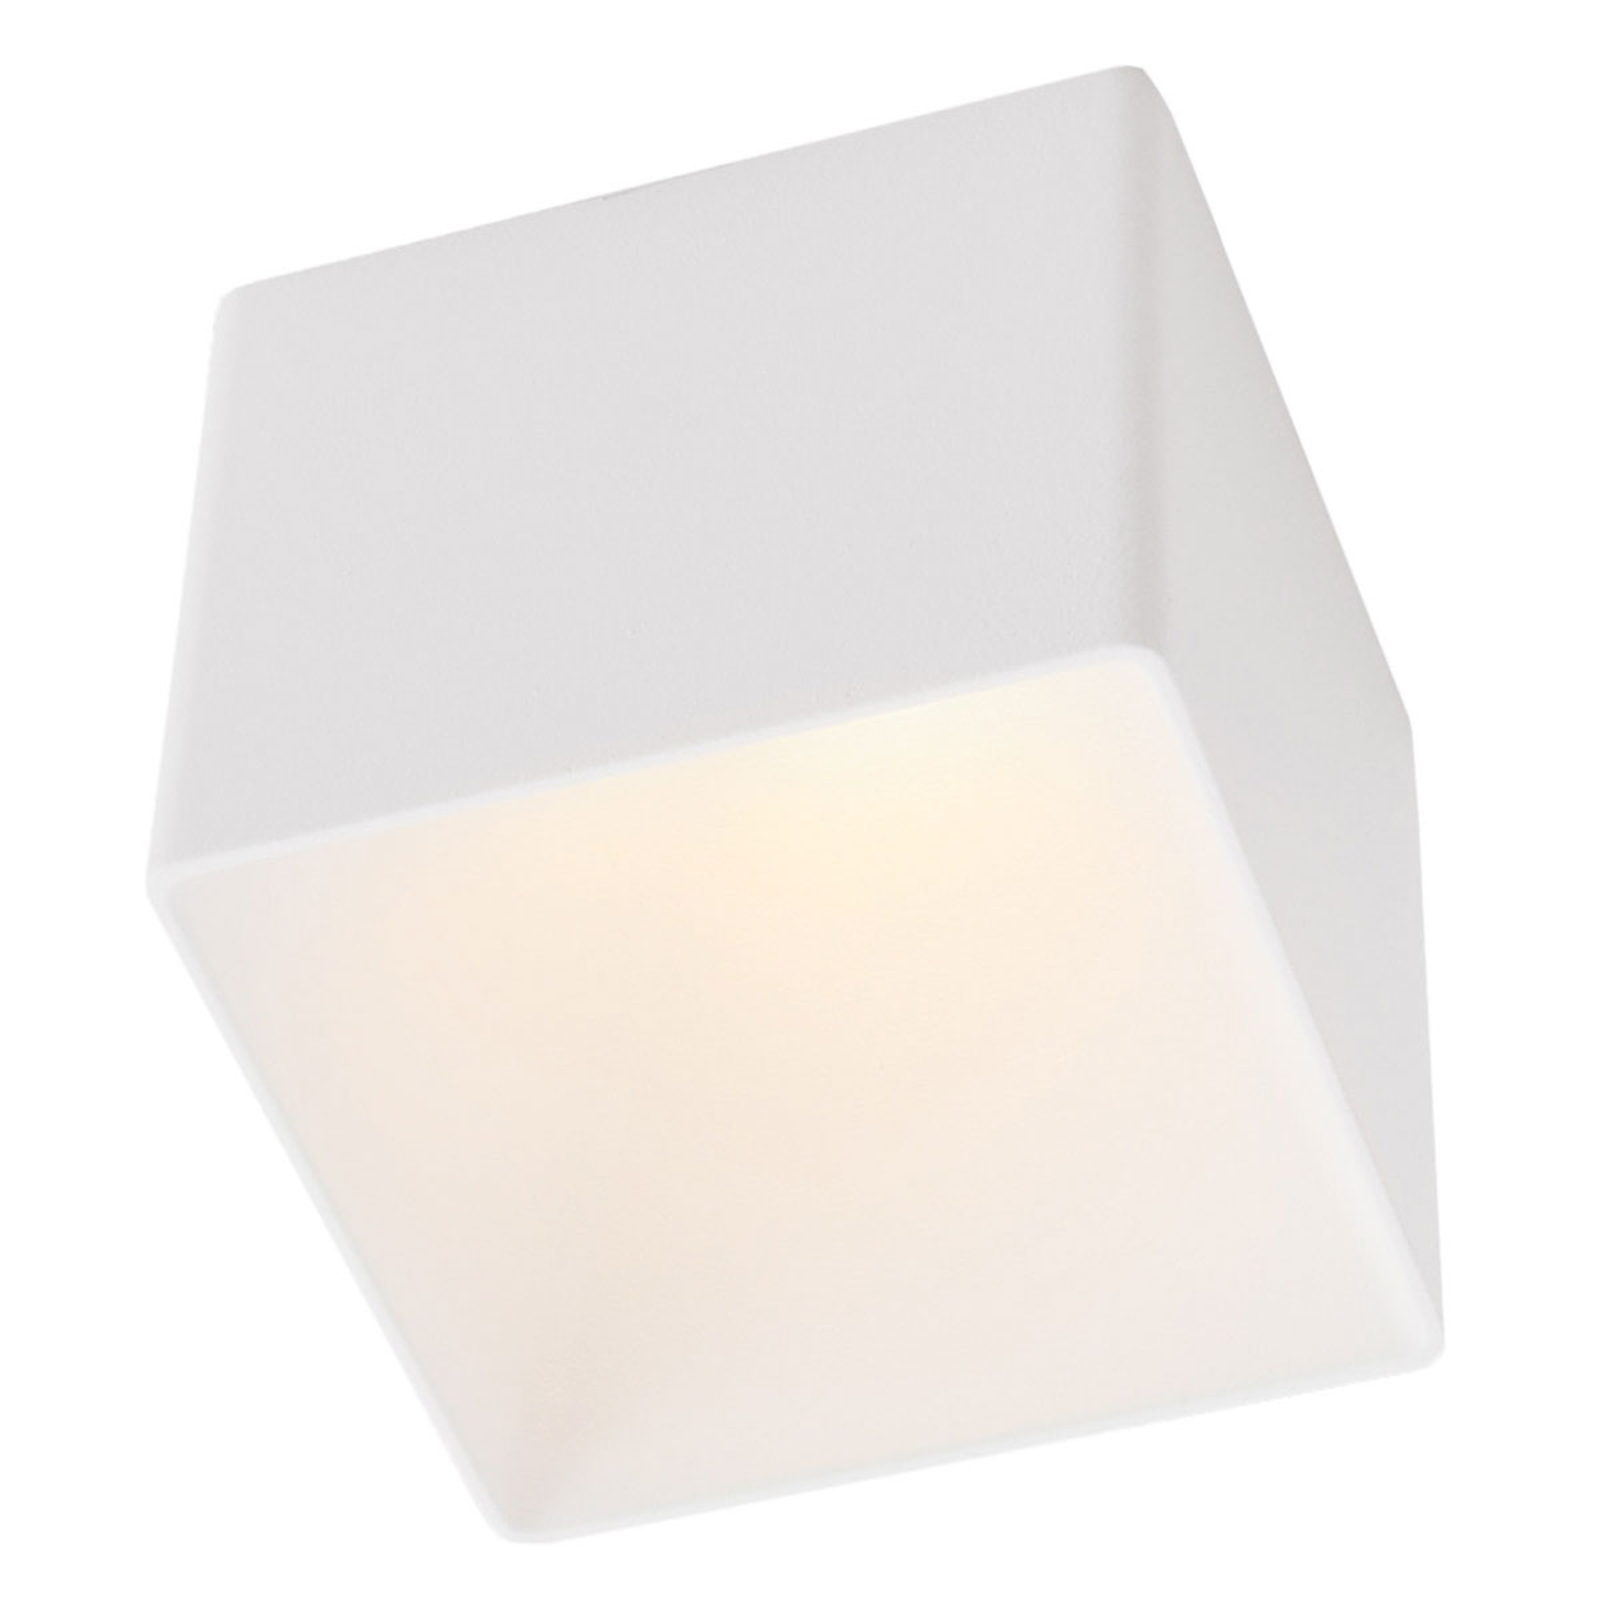 GF design Blocky recessed lamp IP54 white 3,000 K